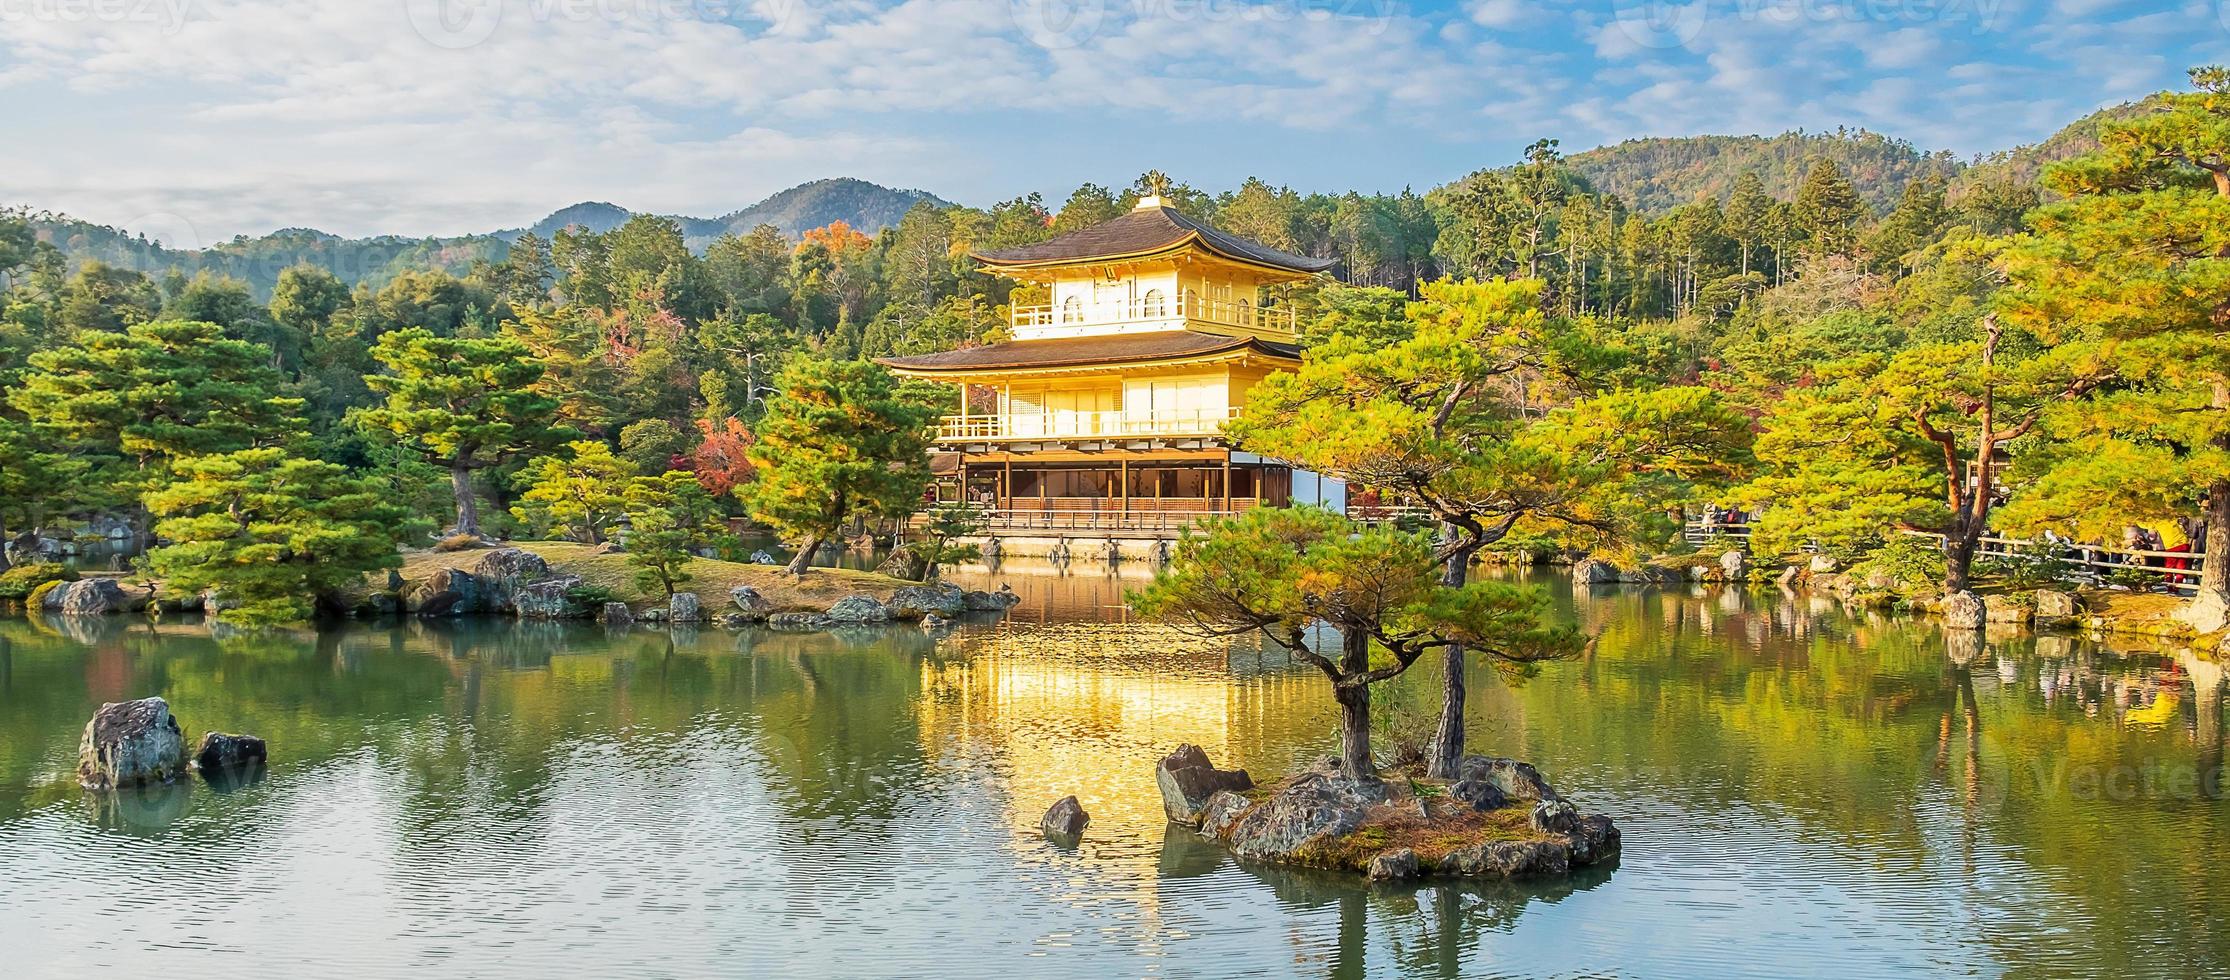 hermoso del templo kinkakuji o el pabellón dorado en la temporada de follaje de otoño, punto de referencia y famoso por las atracciones turísticas en kyoto, kansai, japón foto